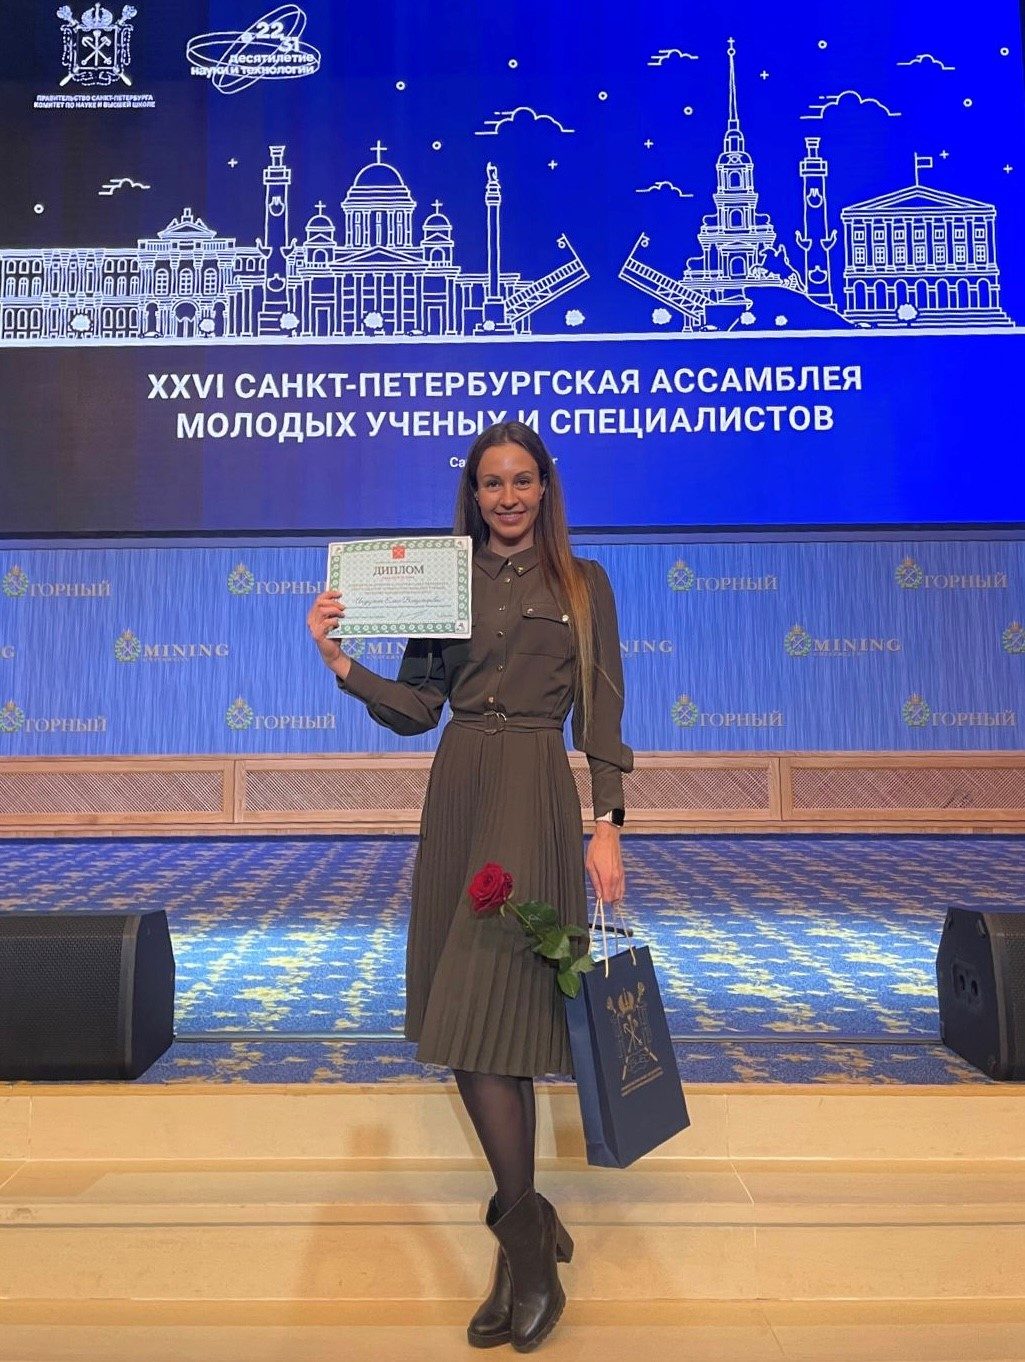 Сотрудник научно-исследовательского центра академии стал победителем сразу двух конкурсов, проводимых Комитетом по науке и высшей школе Правительства Санкт-Петербурга